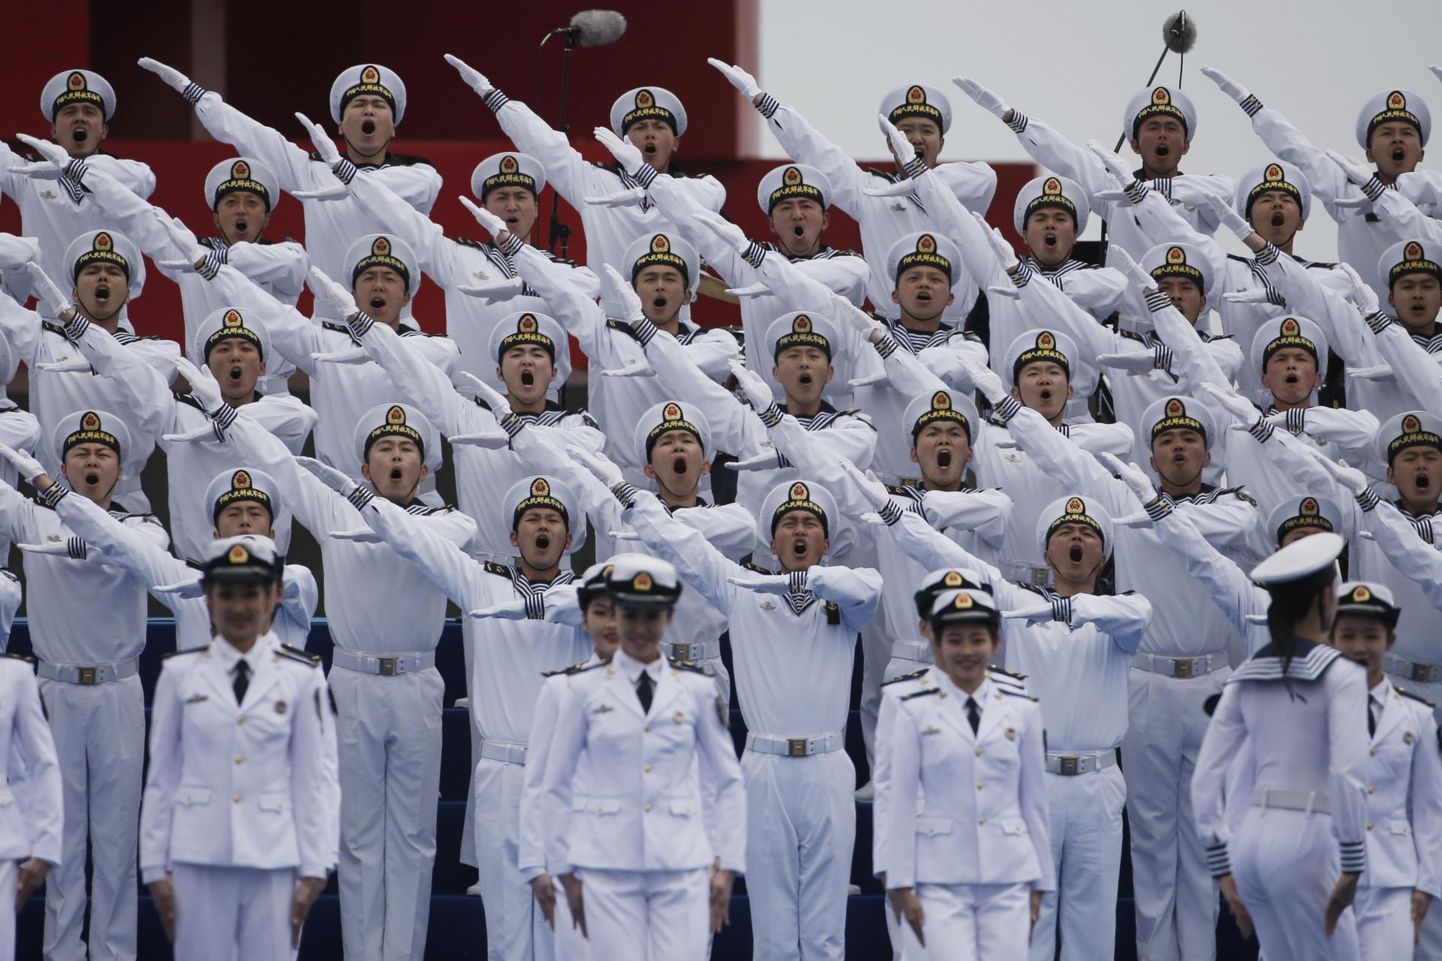 Hiina Rahva Vabastusarmee mereväe sõdurid esinevad laevastiku 70. aastapäeva puhul korraldatud kontserdil Qingdaos.
 